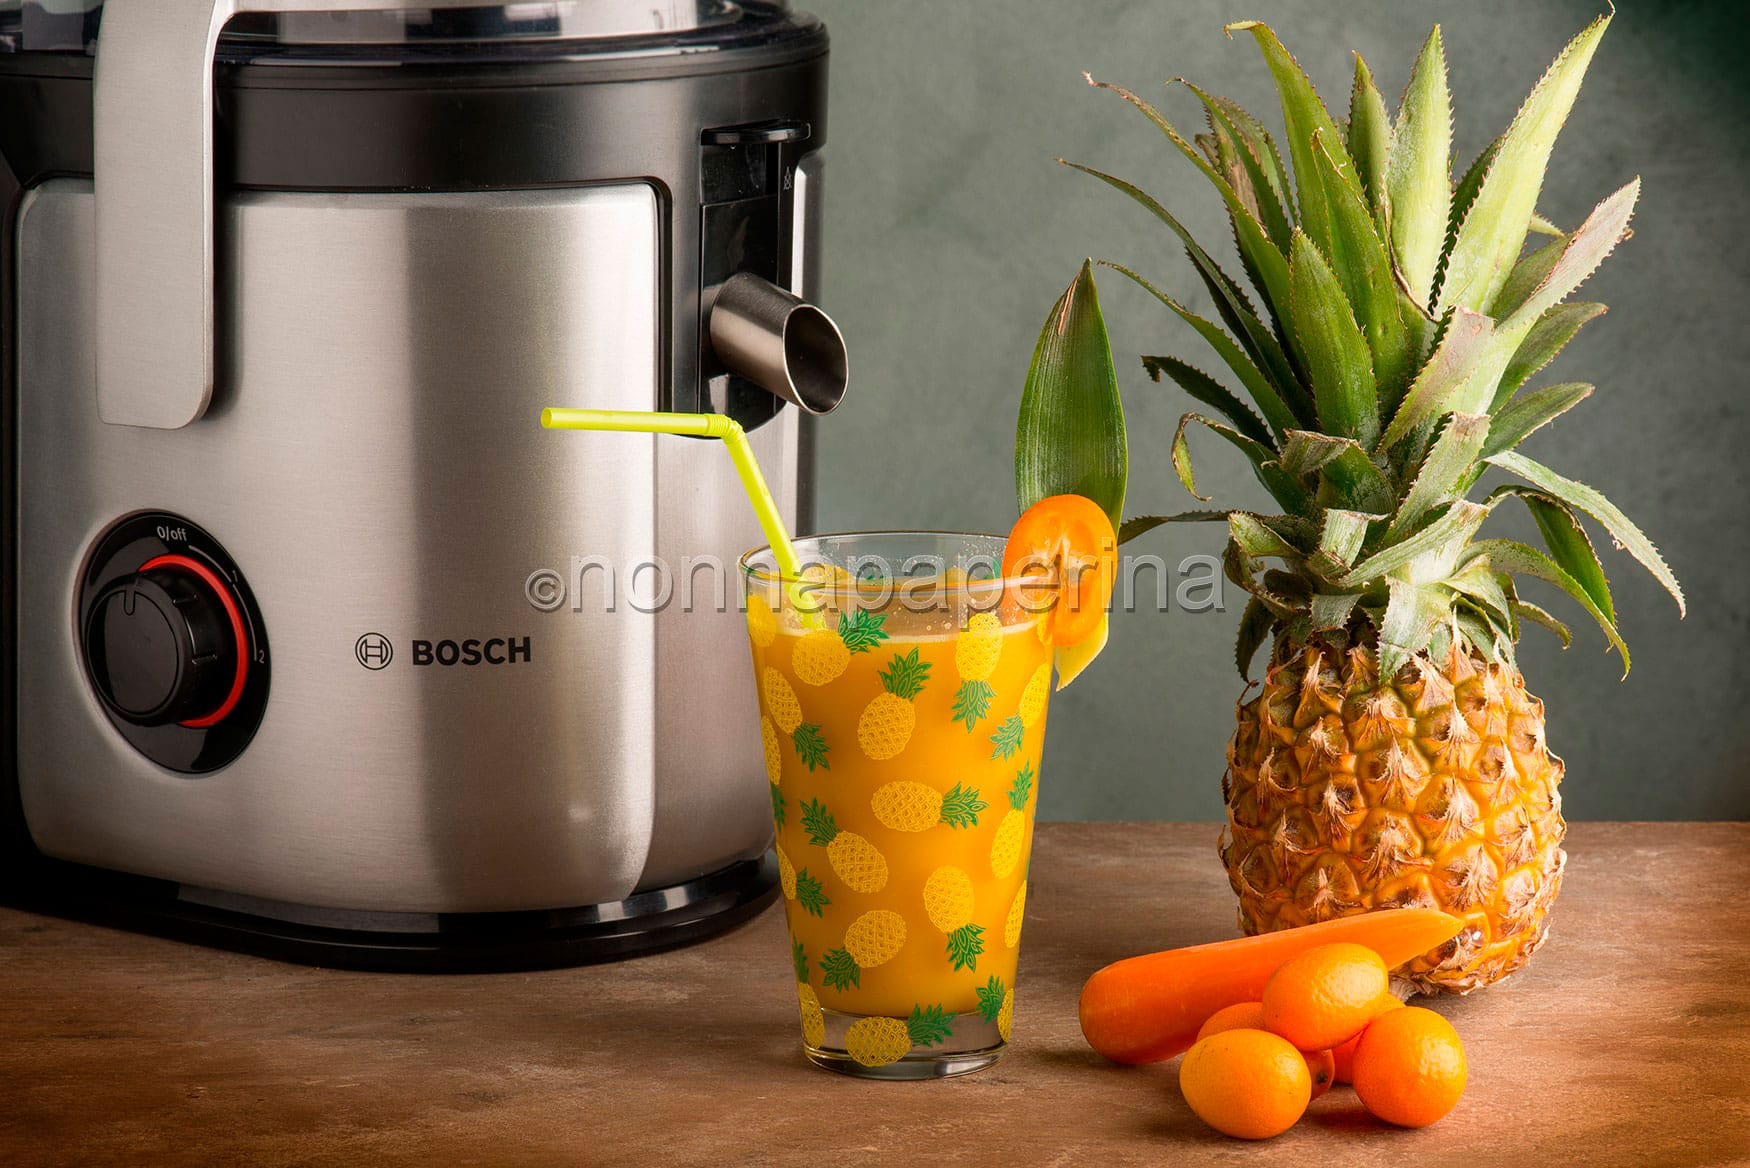 Avete mai assaggiato il centrifugato di ananas e carote ? Te lo